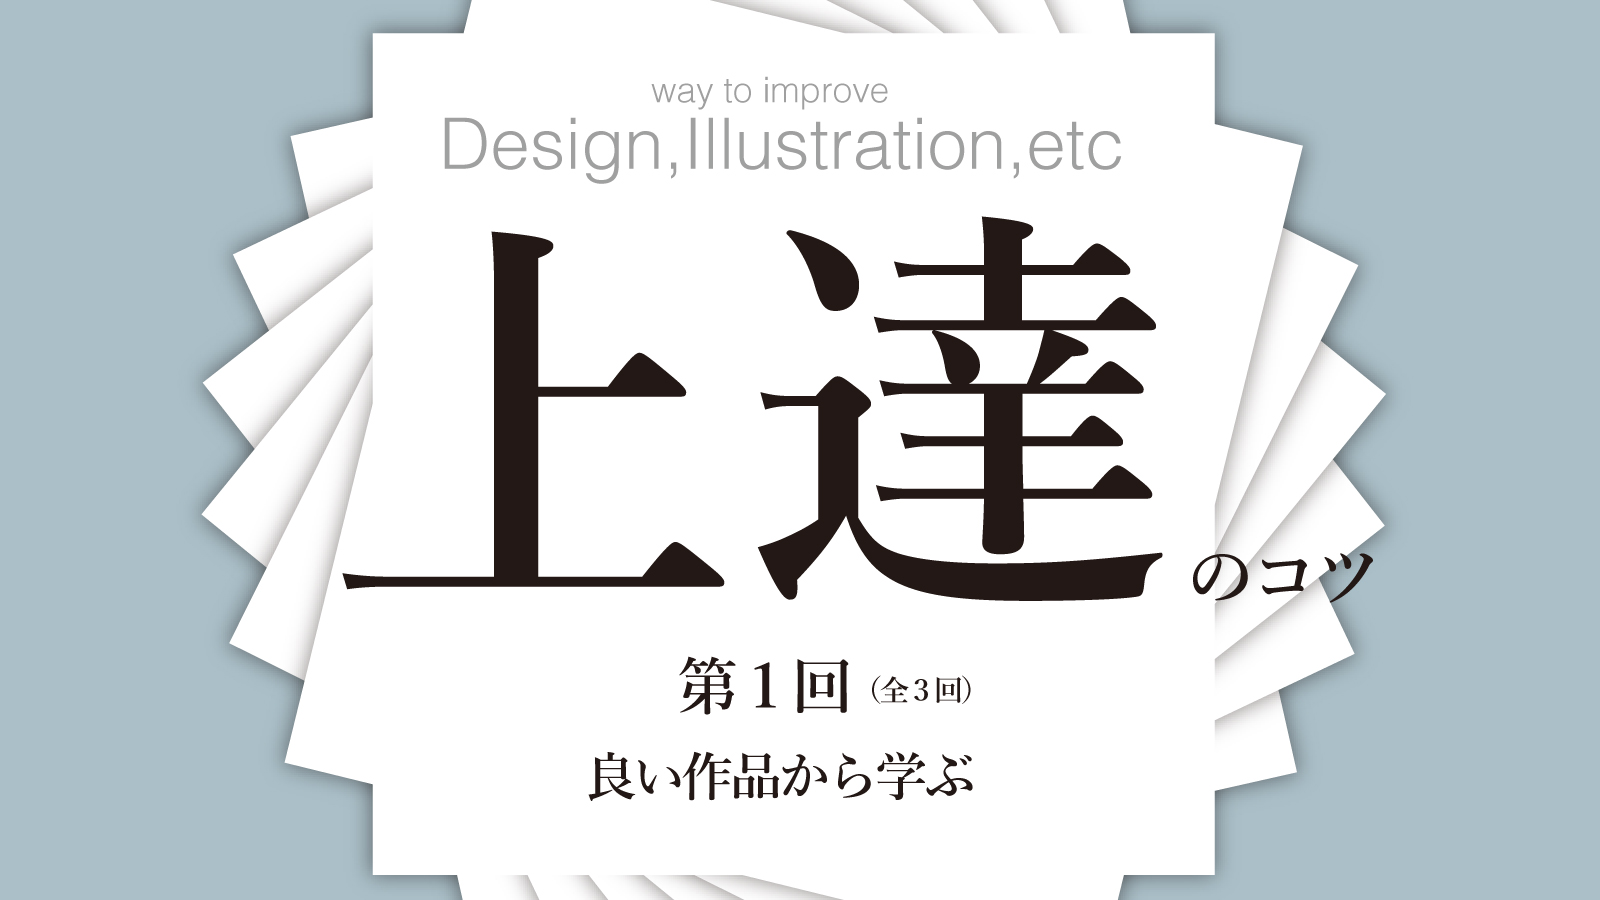 デザイン イラスト 上達のコツ 1 3 御茶の水美術専門学校 産学連携授業でマーケティングとデザイン アートを 実学 で学べます